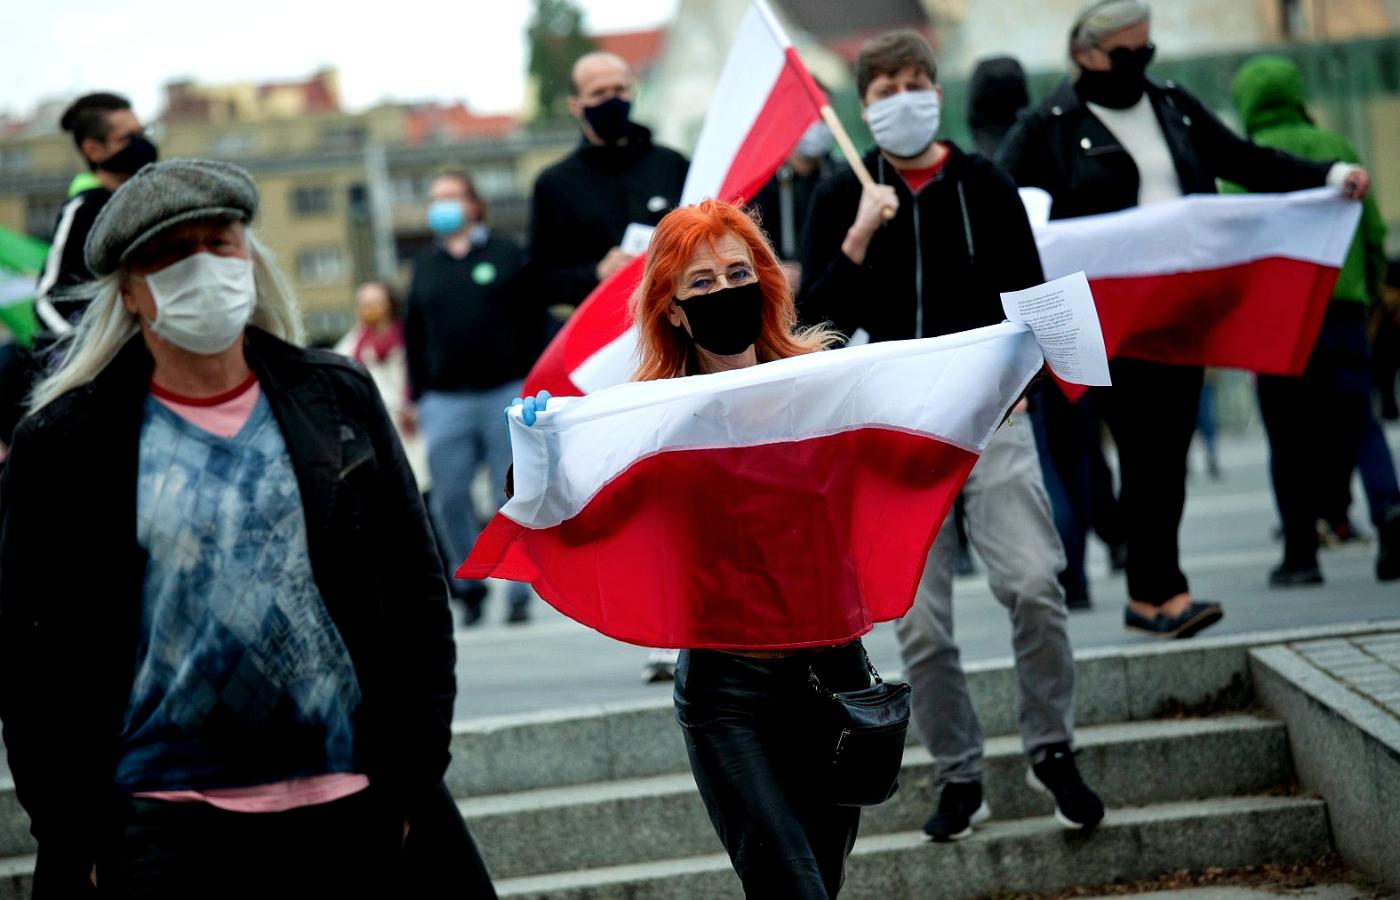 Spacer prodemokratyczny przeciwko niedemokratycznym wyborom we Wrocławiu